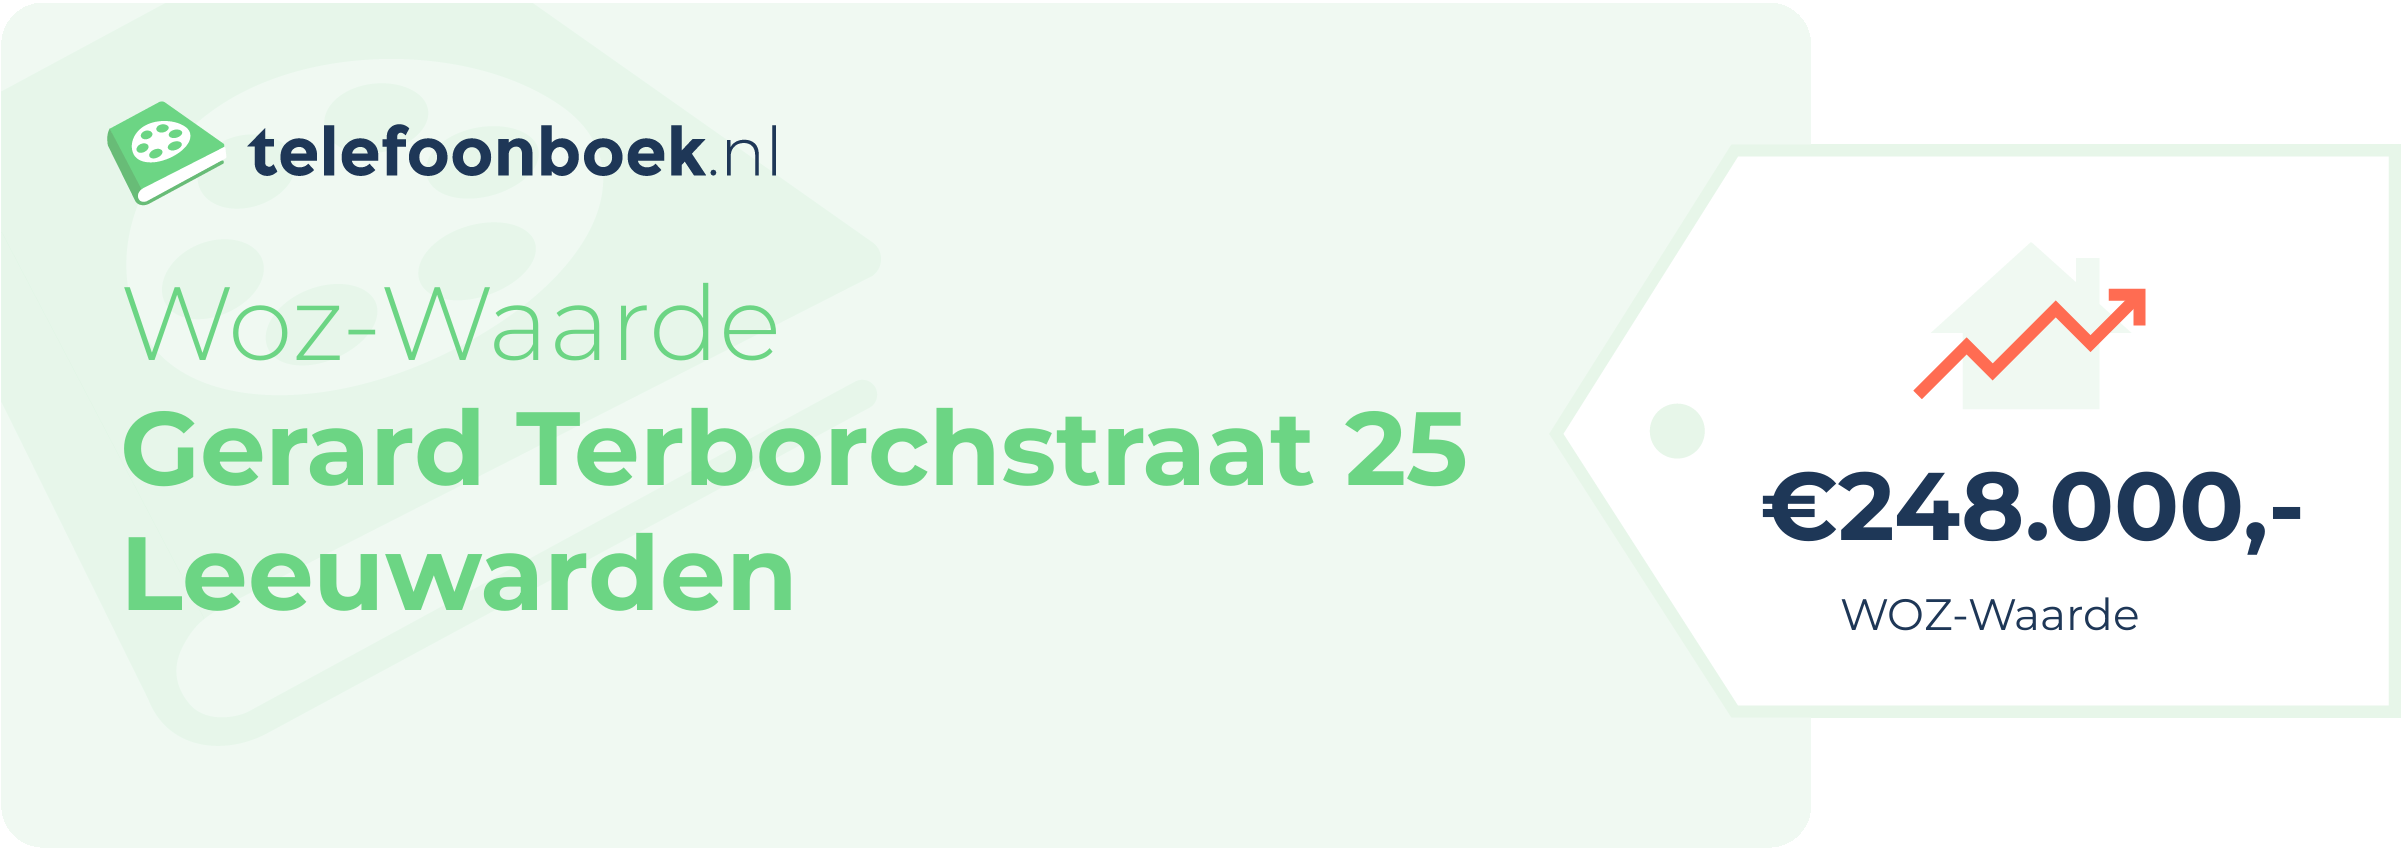 WOZ-waarde Gerard Terborchstraat 25 Leeuwarden